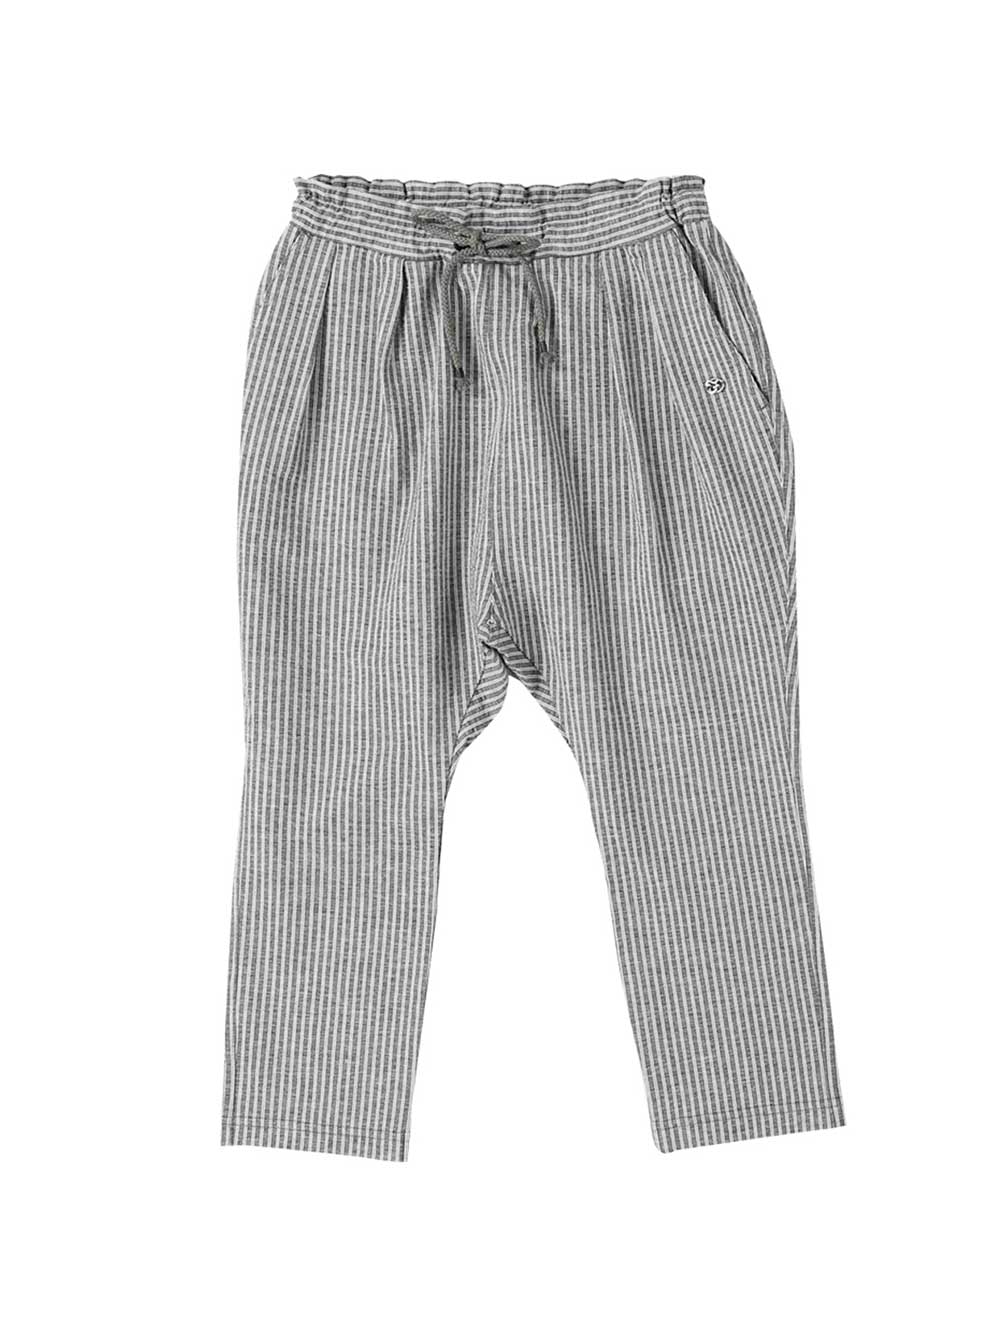 Coolmax Striped Pants